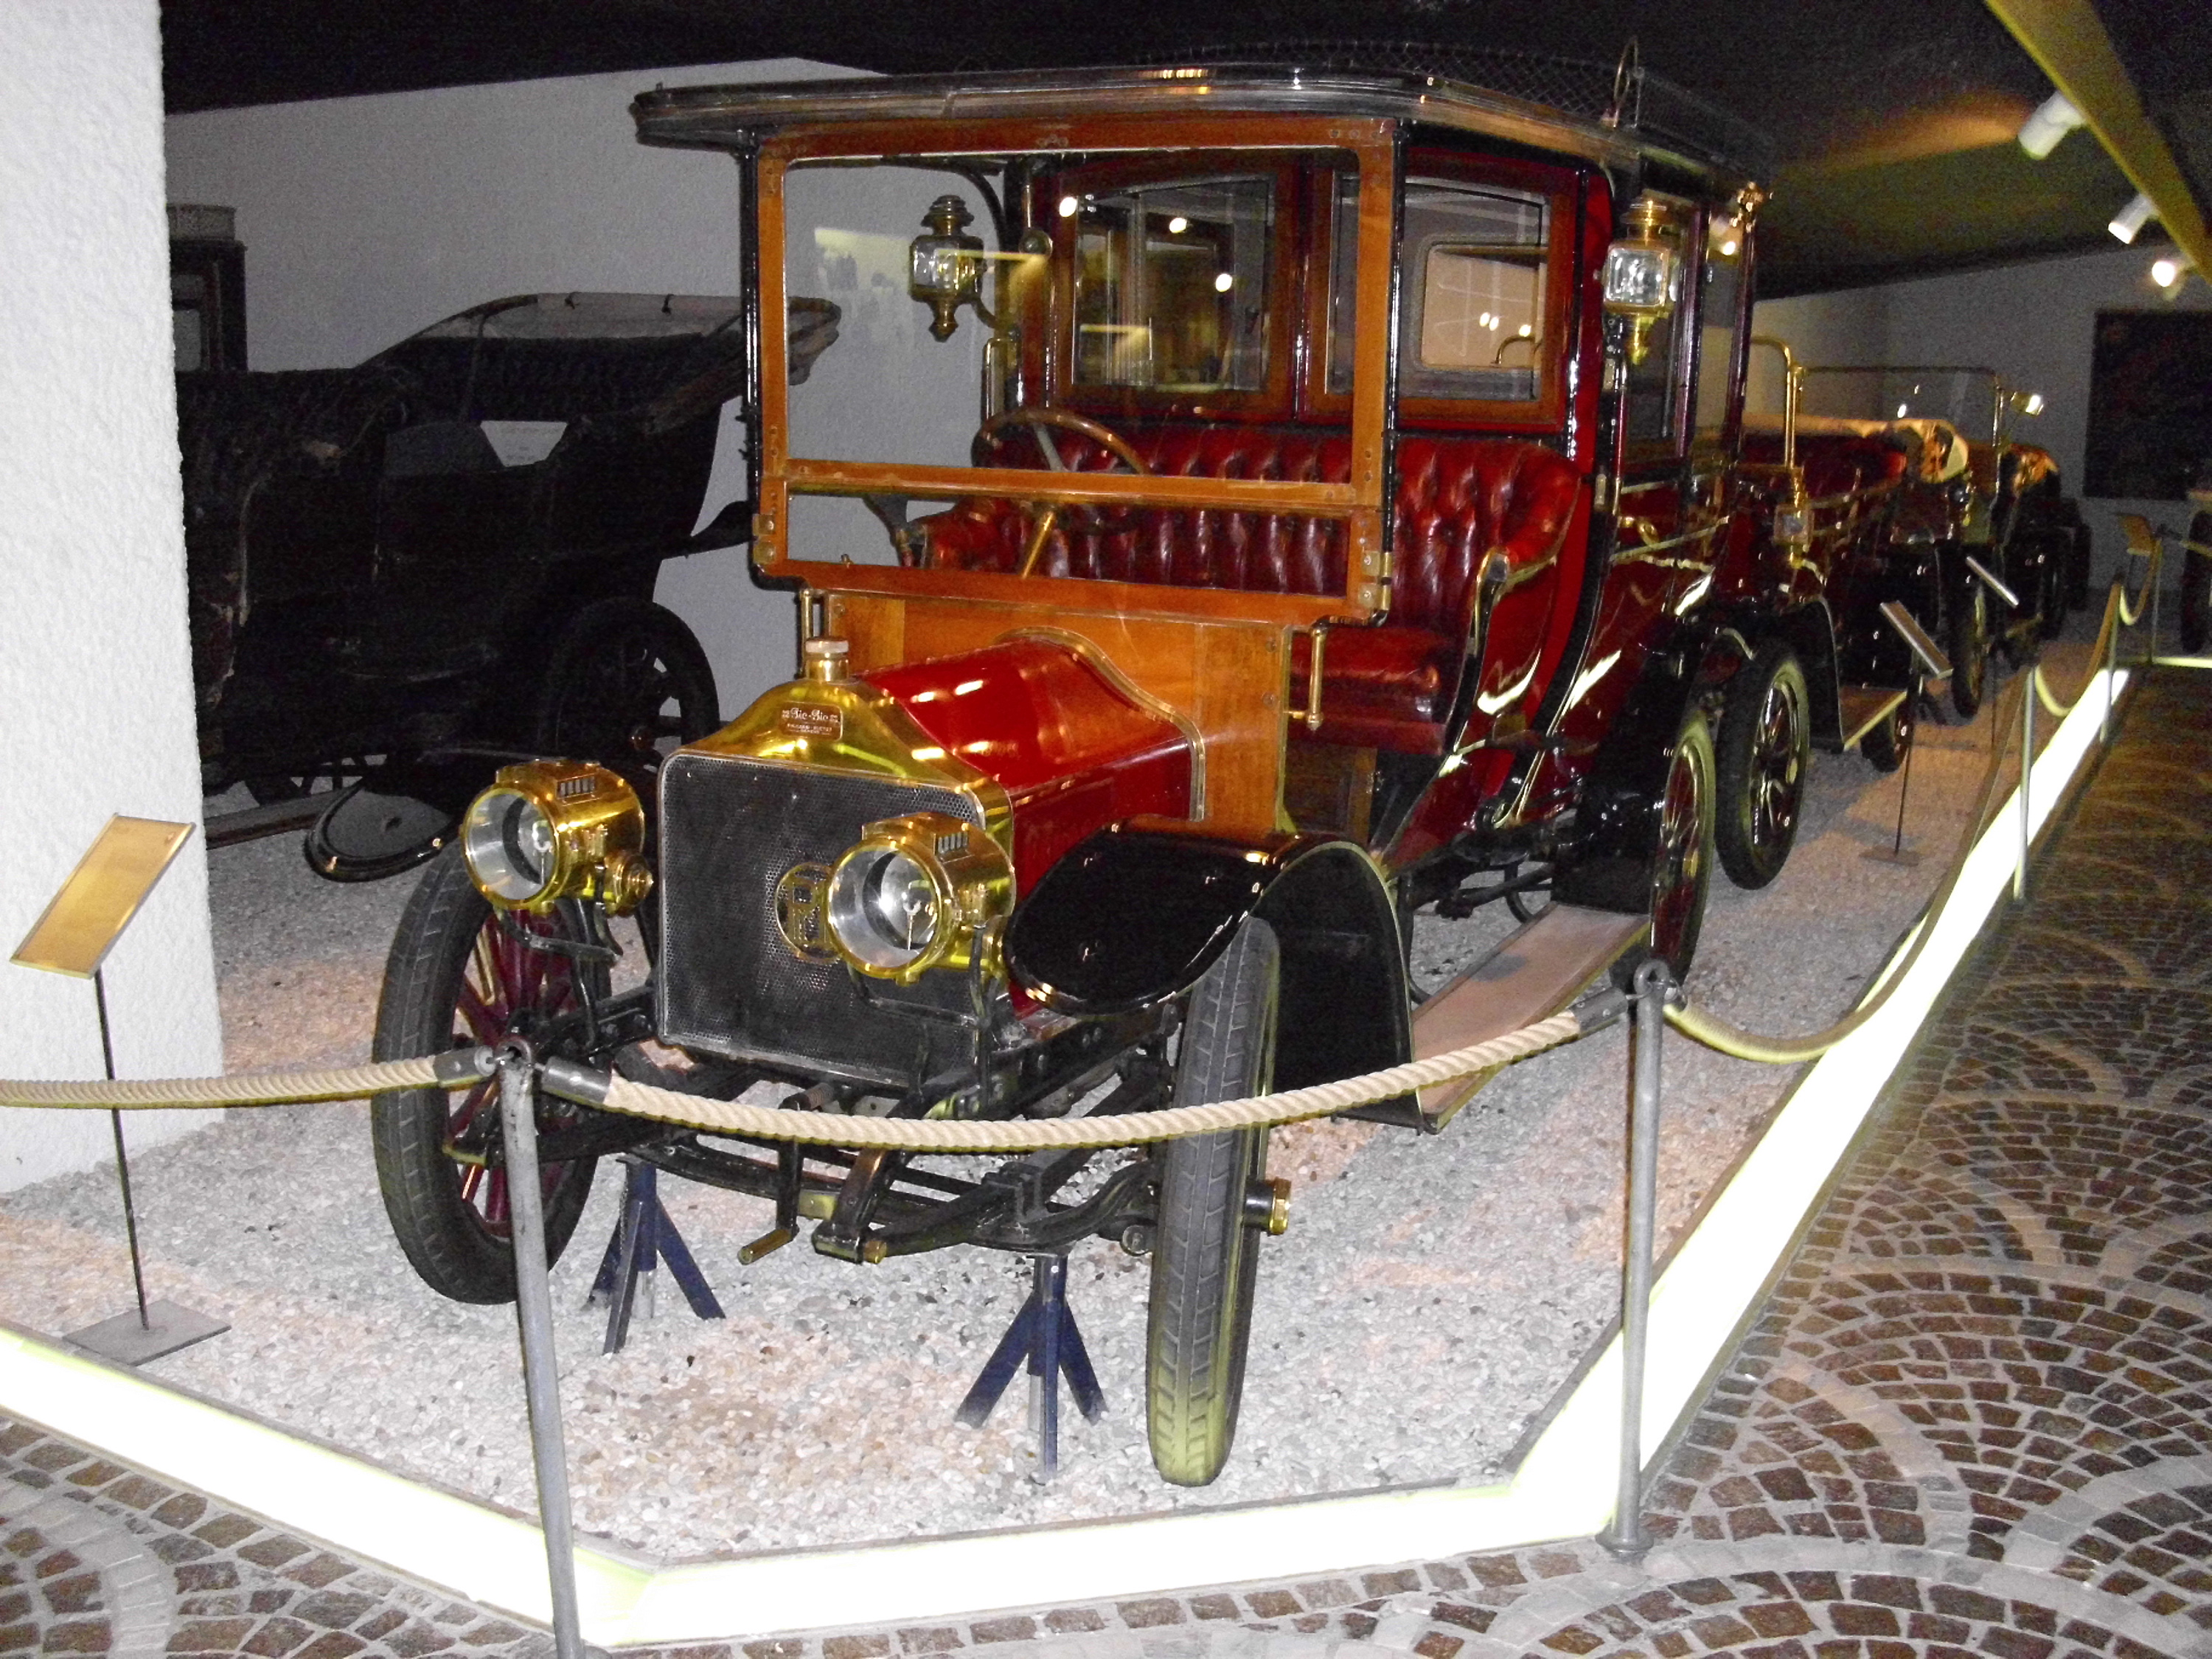 Une Pic-Pic de 1911. Pic-Pic était une marque automobile suisse établie à Genève et active de 1906 à 1924. Les véhicules ont été imaginés par Charles et Frédéric Dufaux qui en ont confié la production à la société Piccard-Pictet (d'où le nom de la voiture) jusqu'en 1920, puis à Gnome et Rhône de 1920 à la disparition de la marque, en 1924.